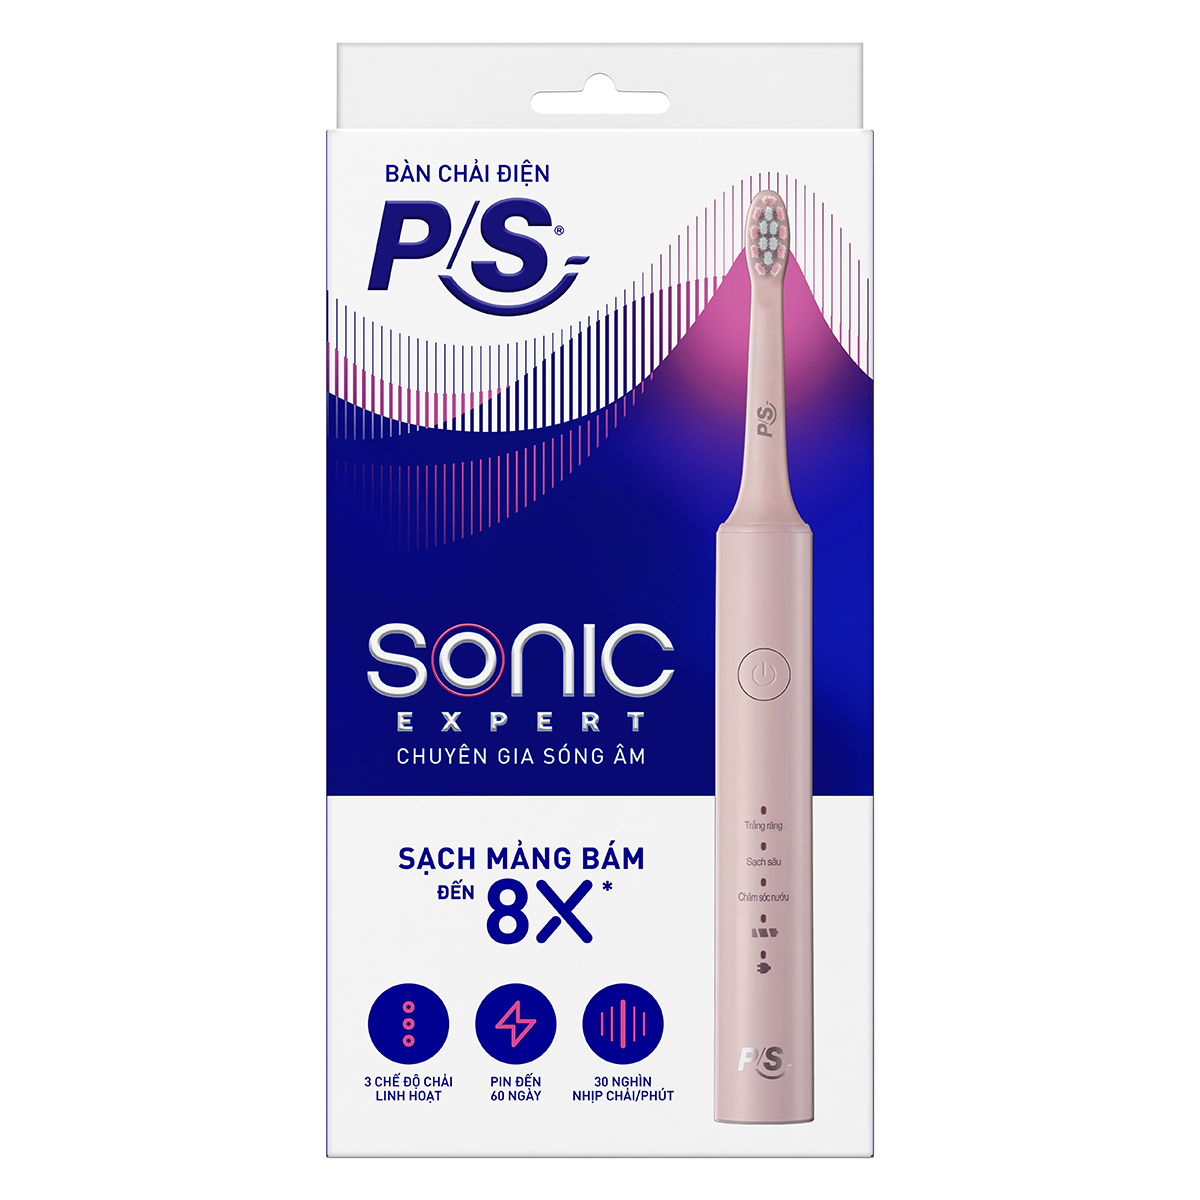 Bộ bàn Chải Điện P/S Sonic Expert Chuyên Gia Sóng Âm - Công Nghệ Sóng Âm, Chải Sạch Mảng Bám Tới 8X - Hồng Pastel